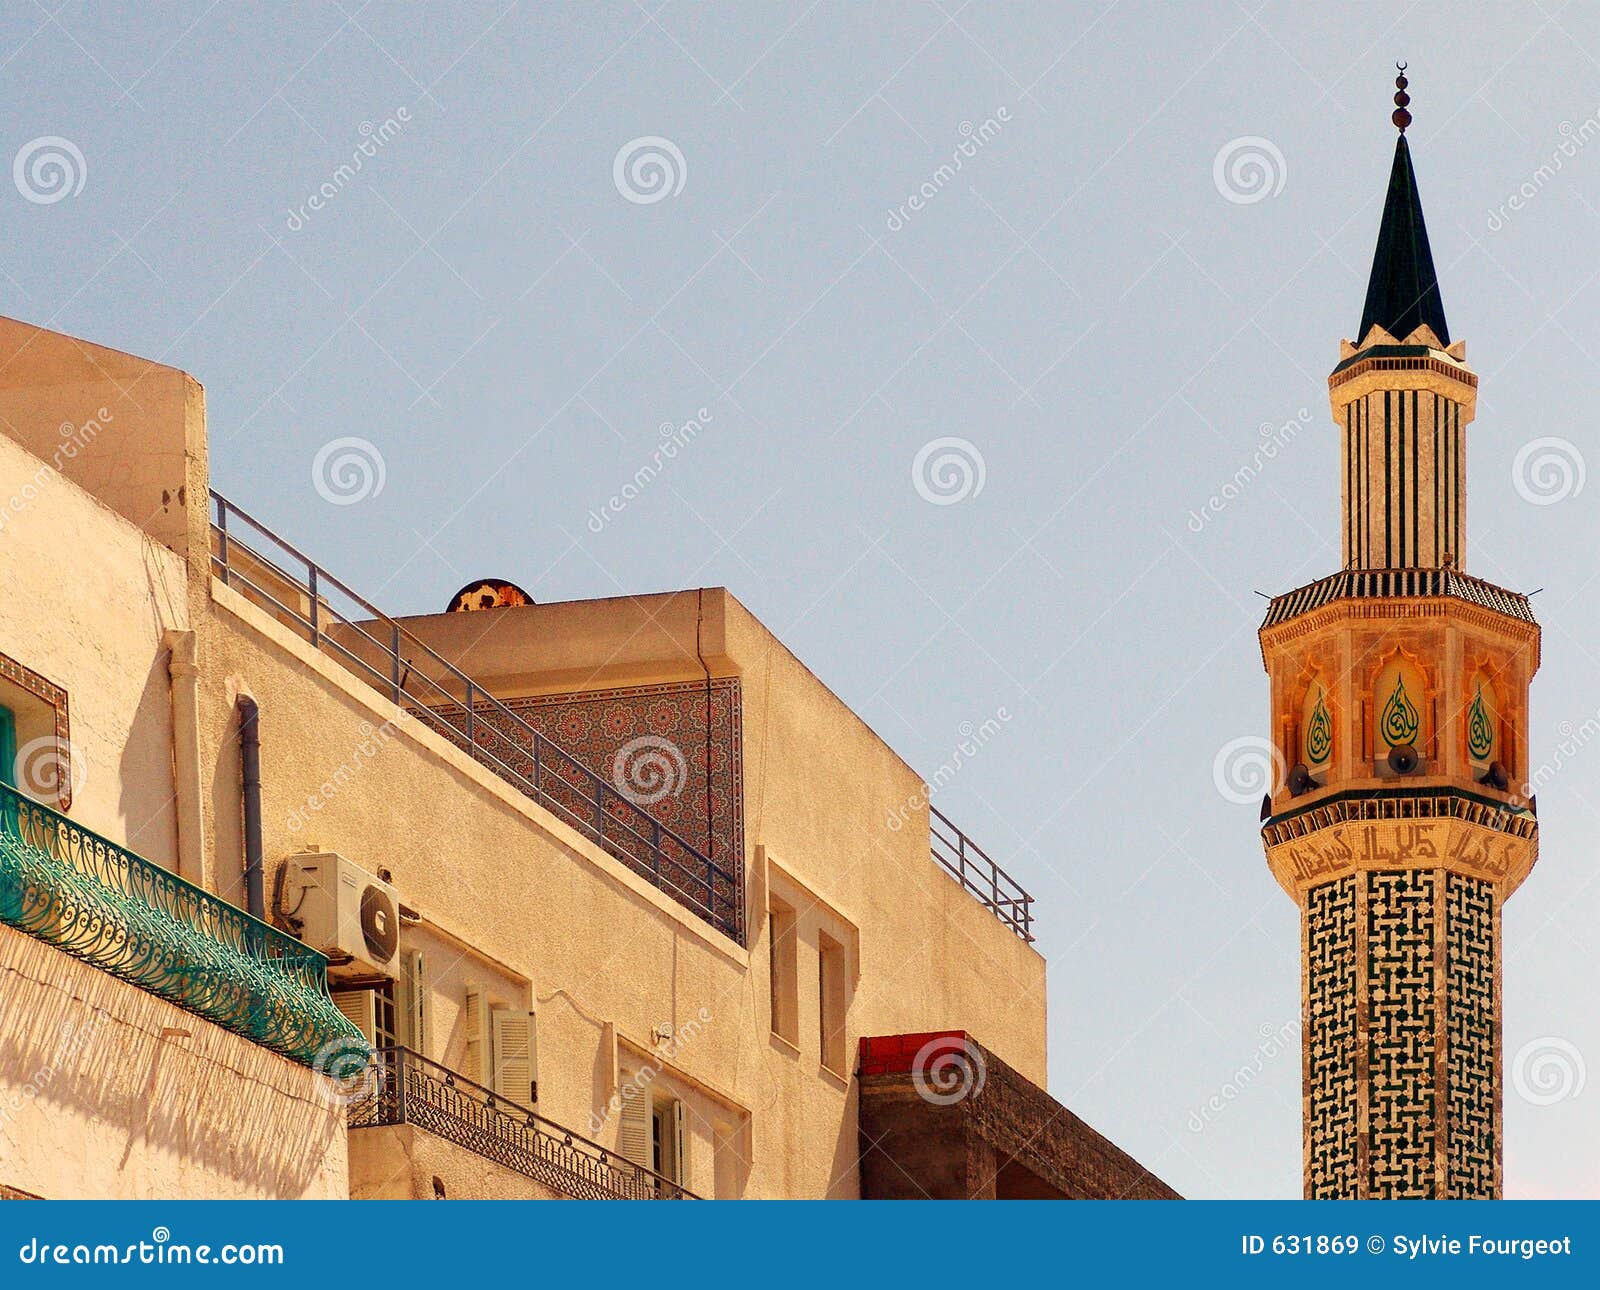 minaret in hammamet, tunisia